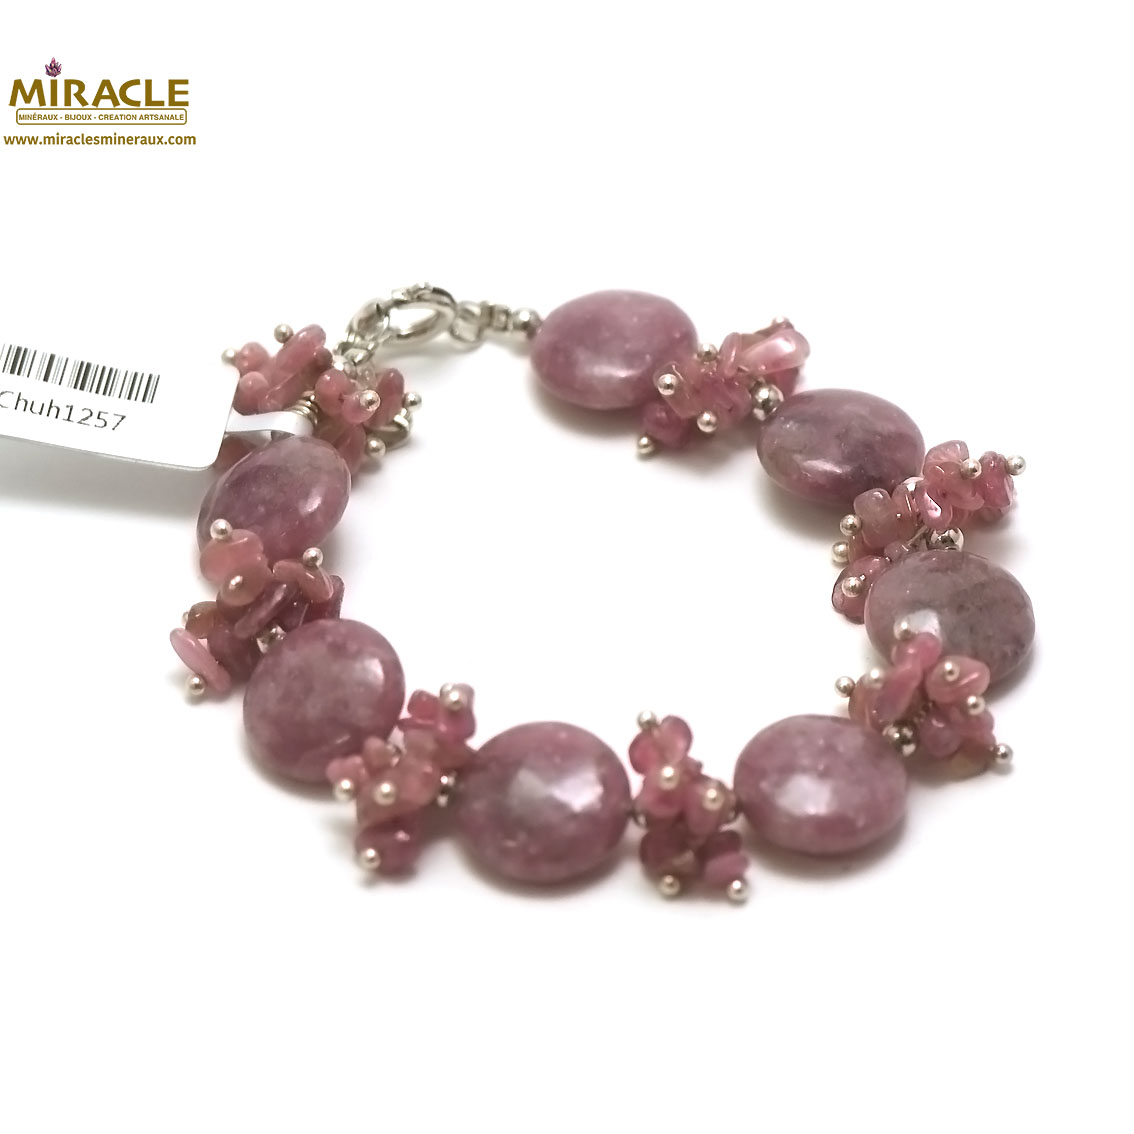 C grappe de raisin bracelet pierre naturelle de lépidolite